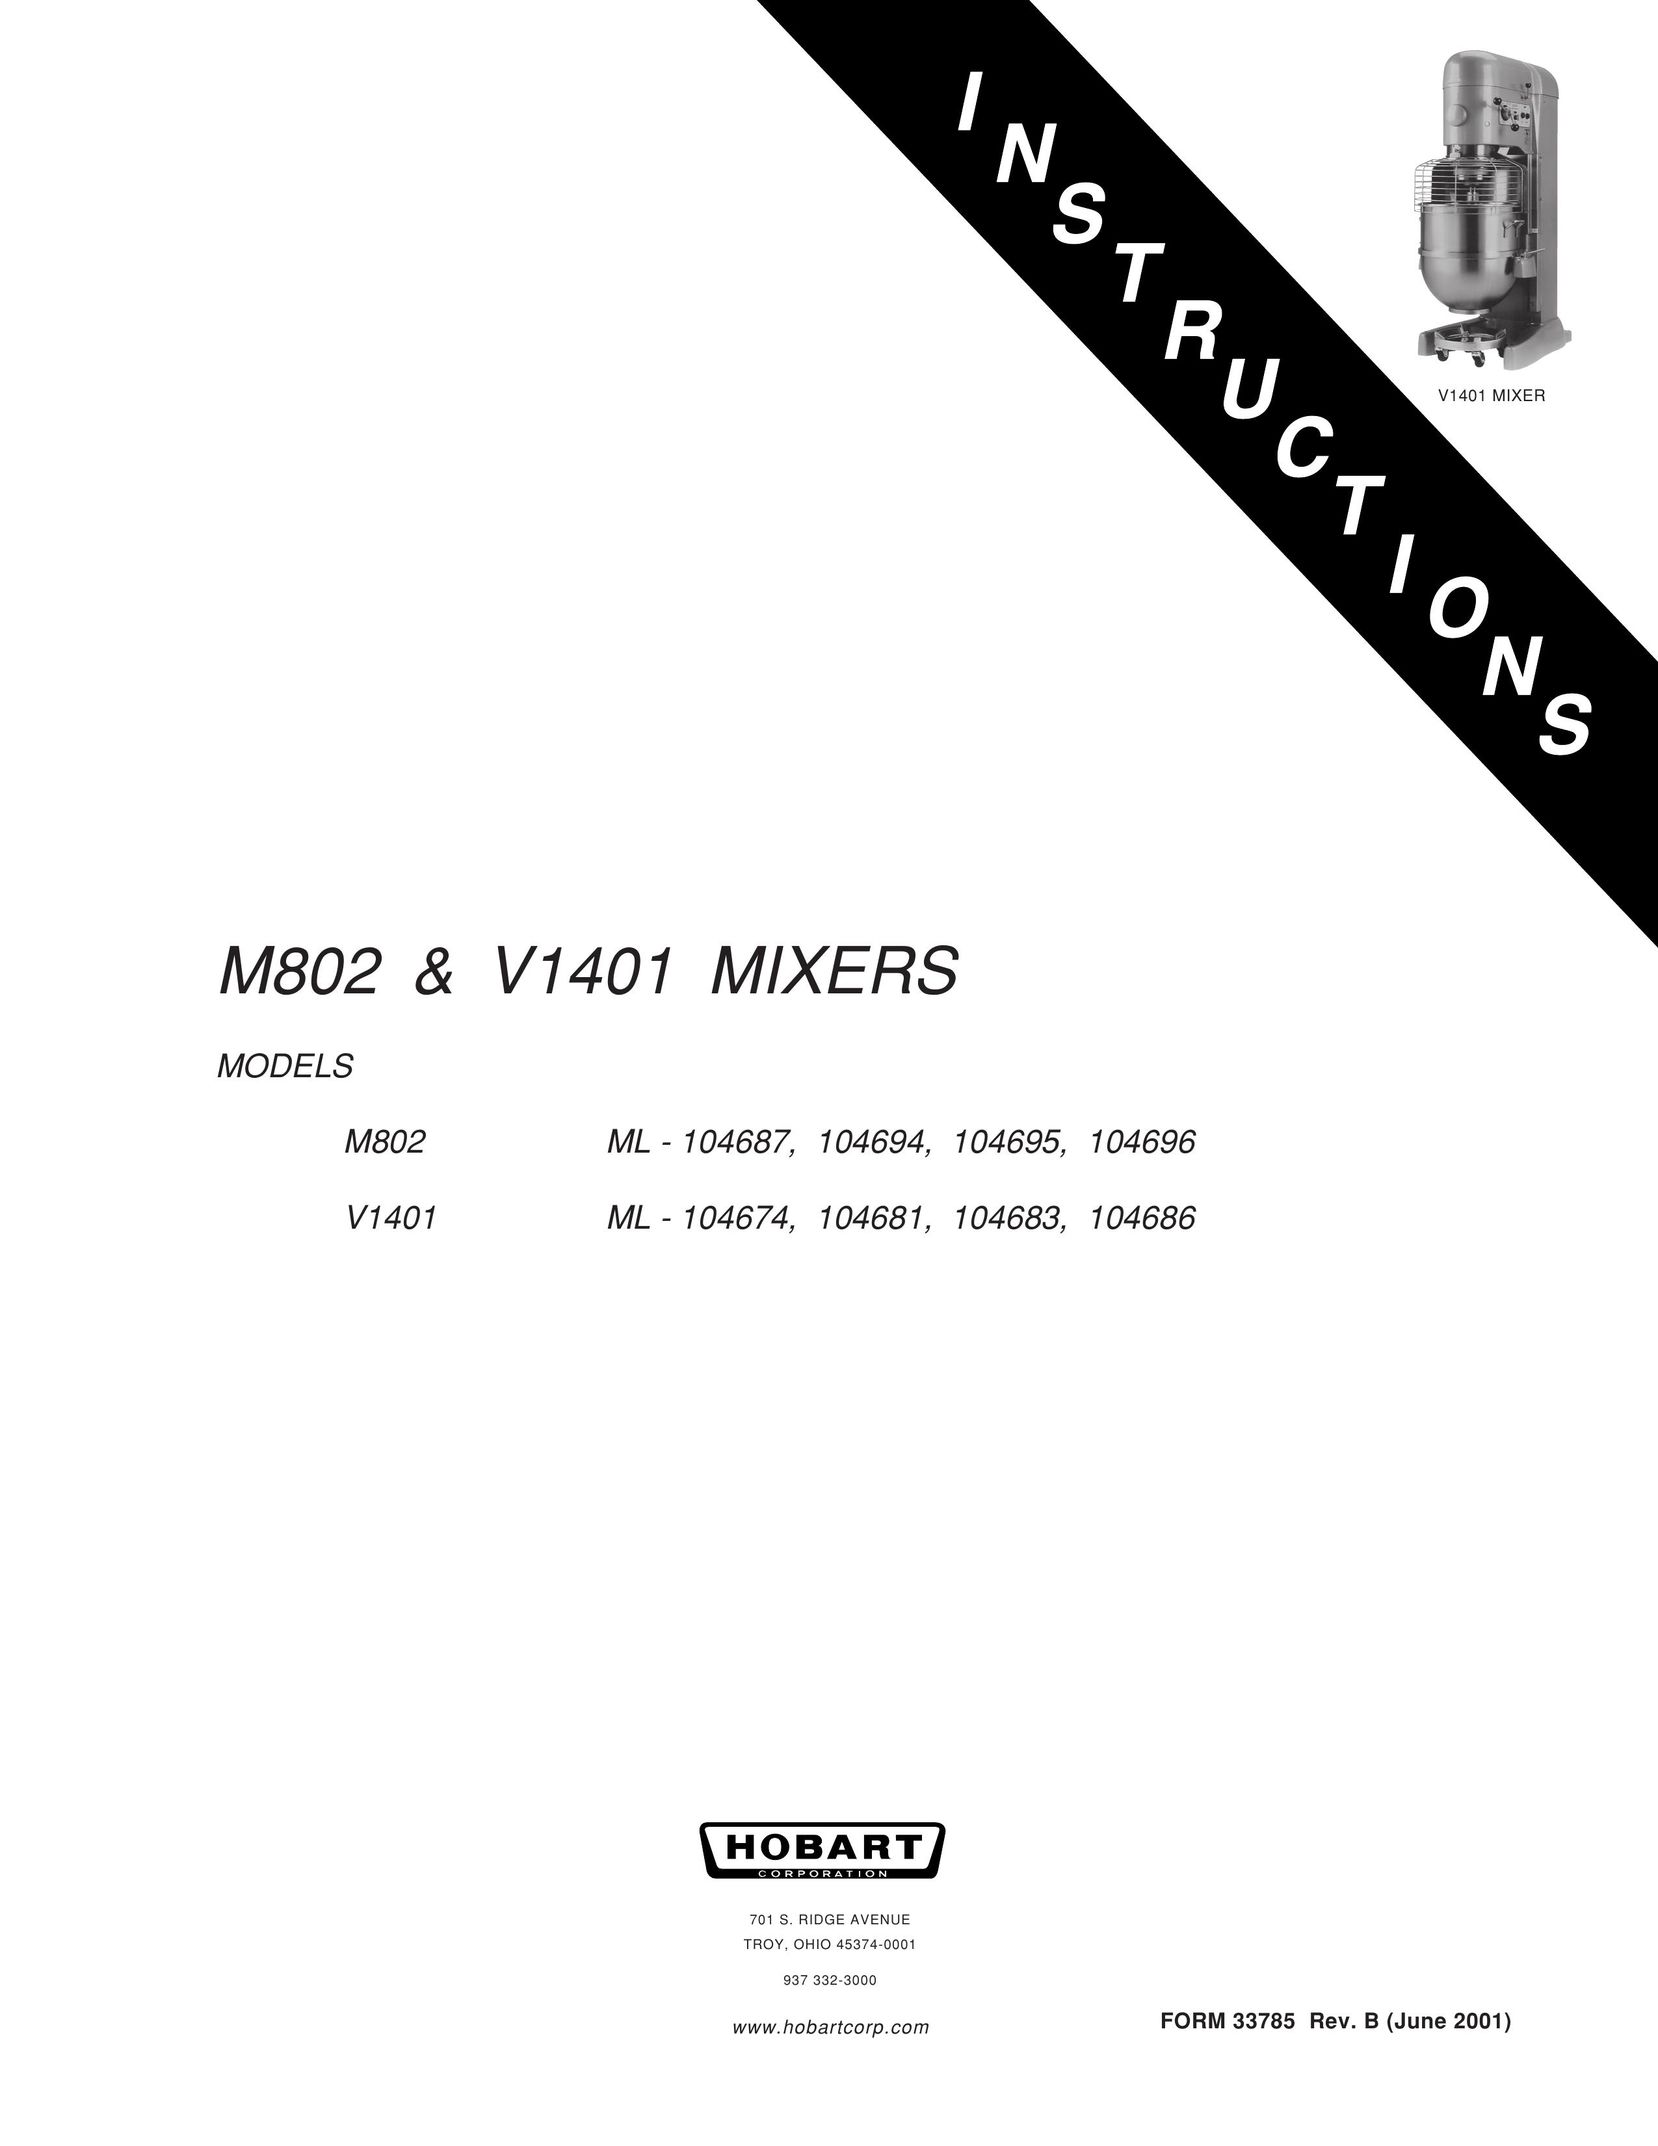 Hobart M802 Mixer User Manual